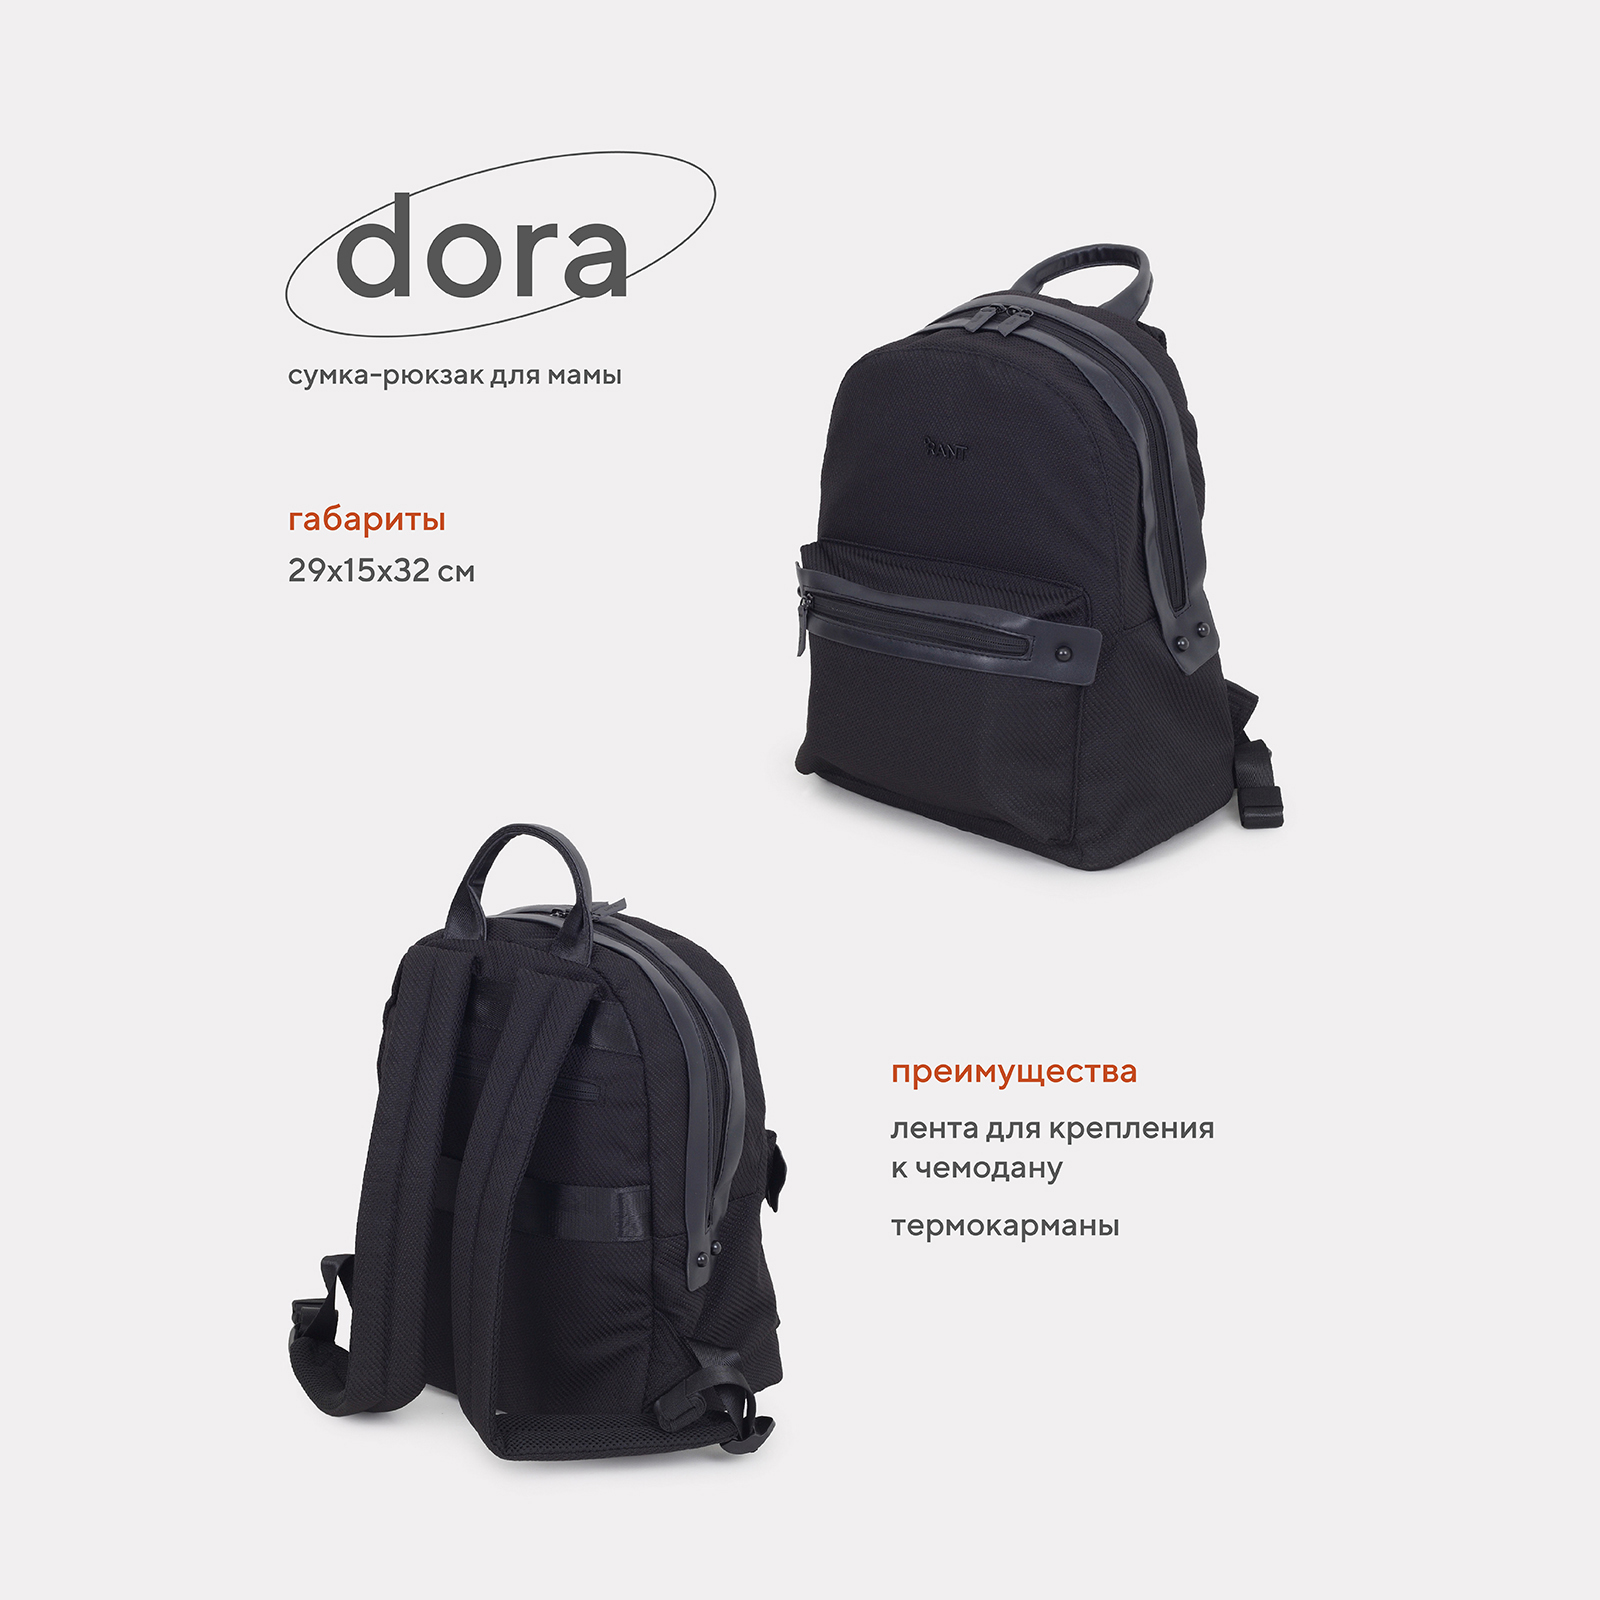 Сумка-рюкзак для мамы RANT Dora RB009 Black сумка рюкзак для мамы forest kids tarde black ak789665